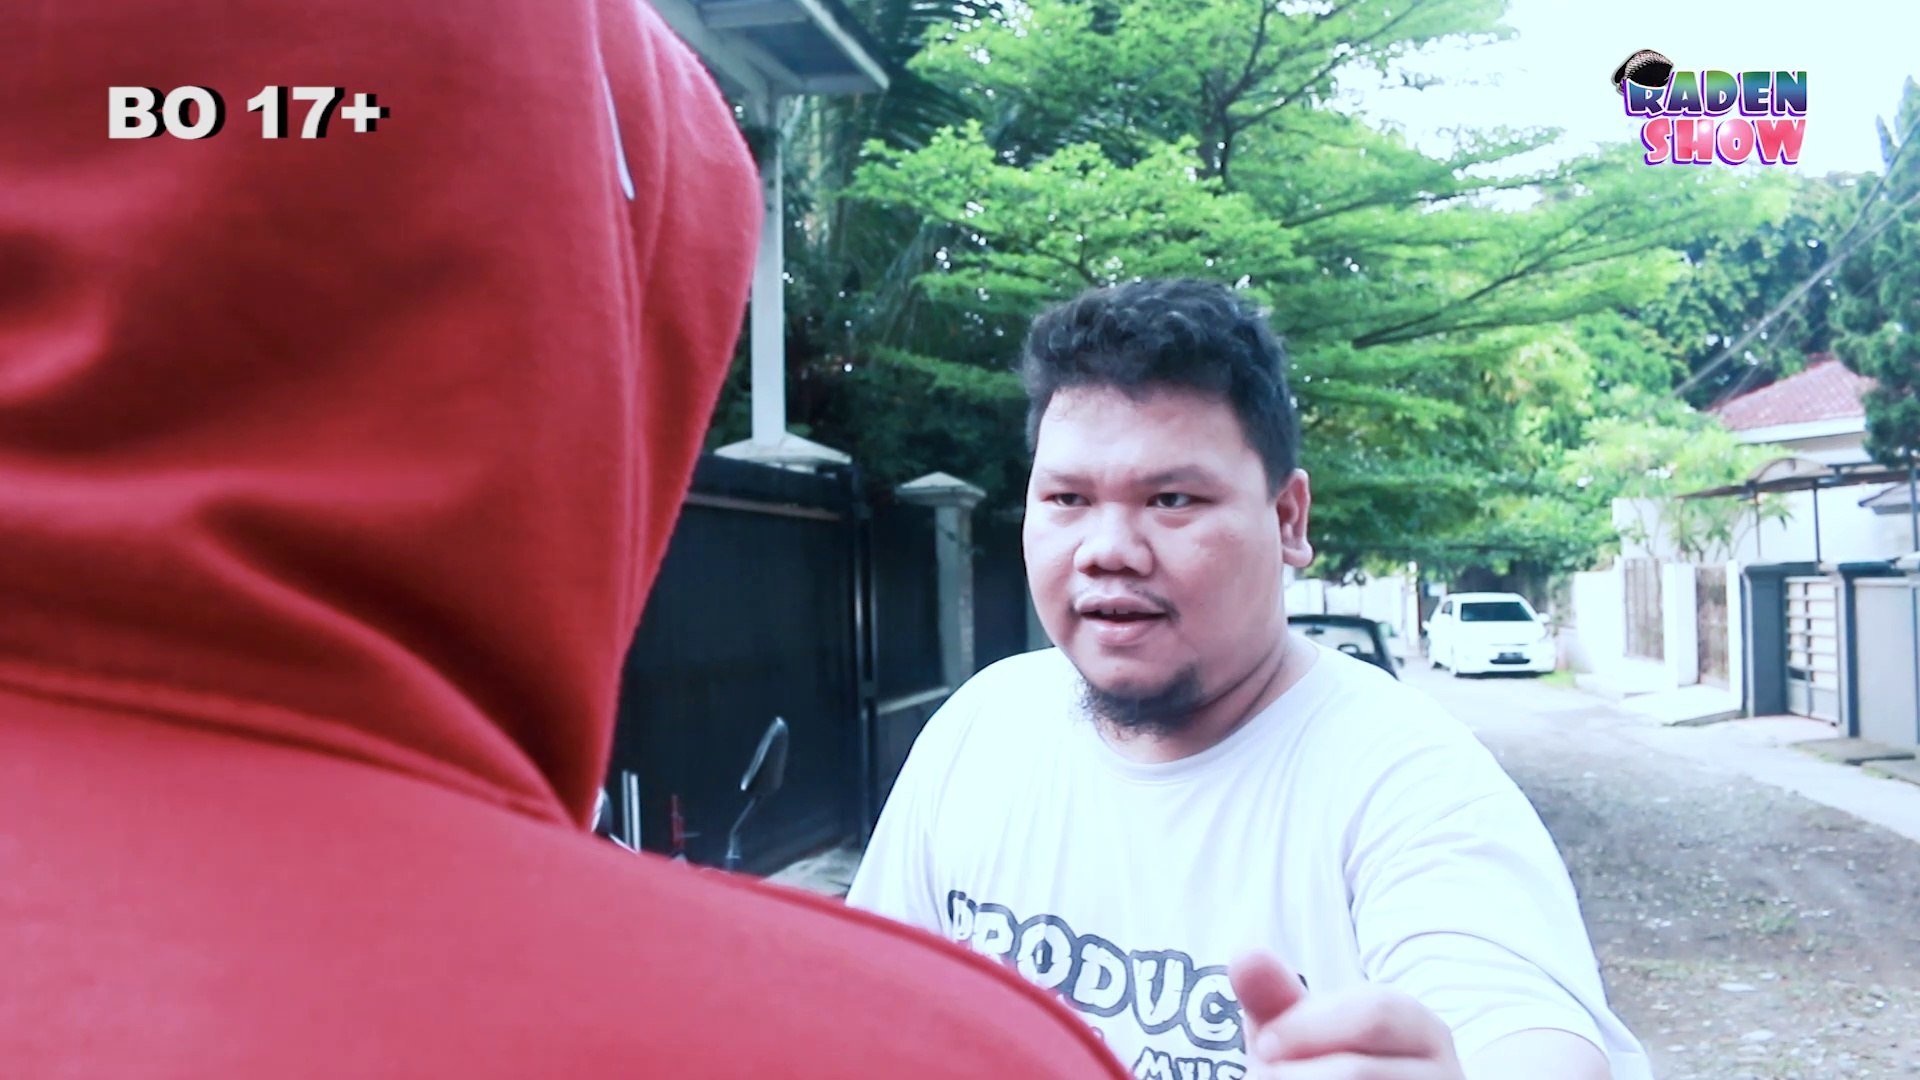 Safar feat. Raden Show - Hipnotis Tingkat Dewa